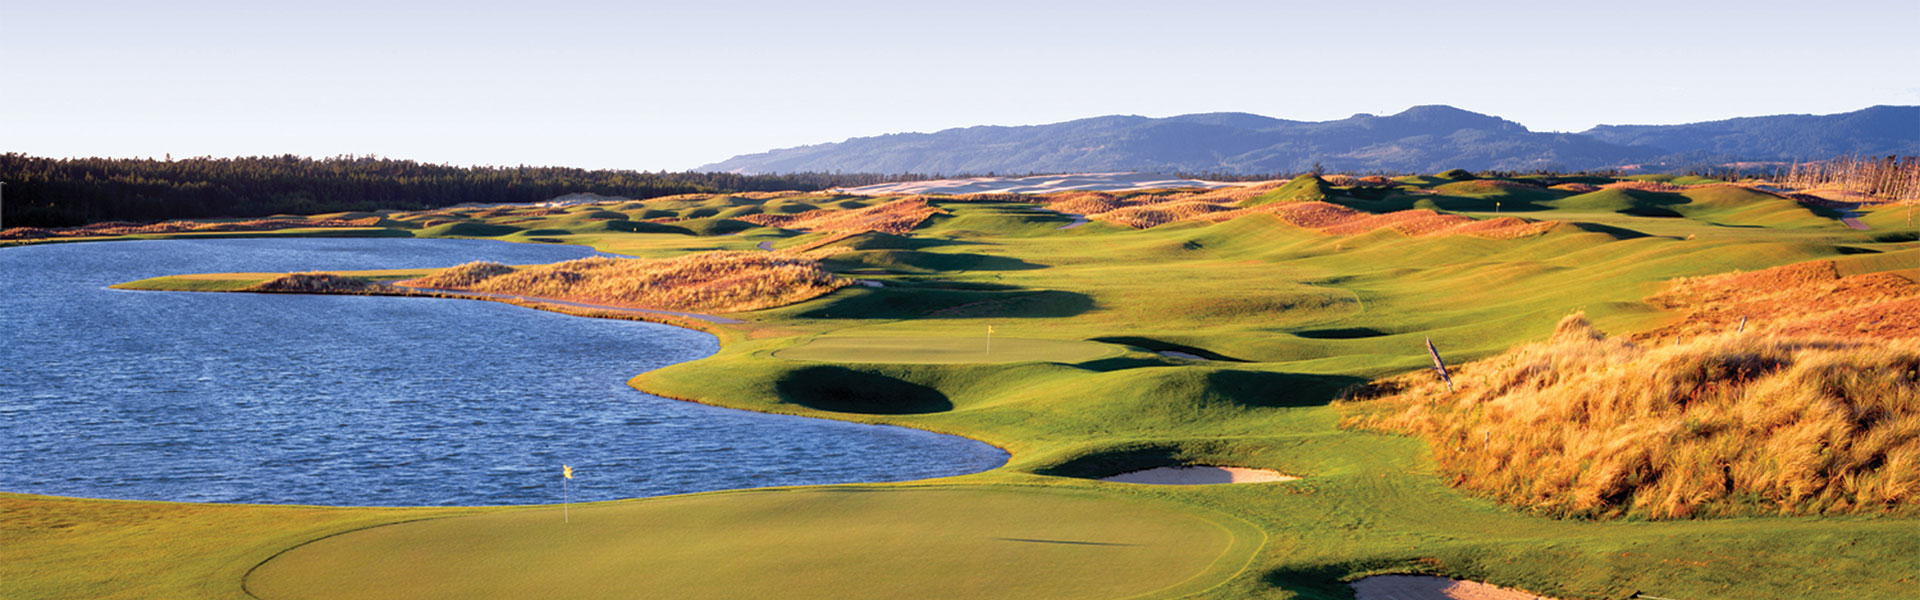 Sandpines Golf Florence Or intended for Golfing Oregon Coast